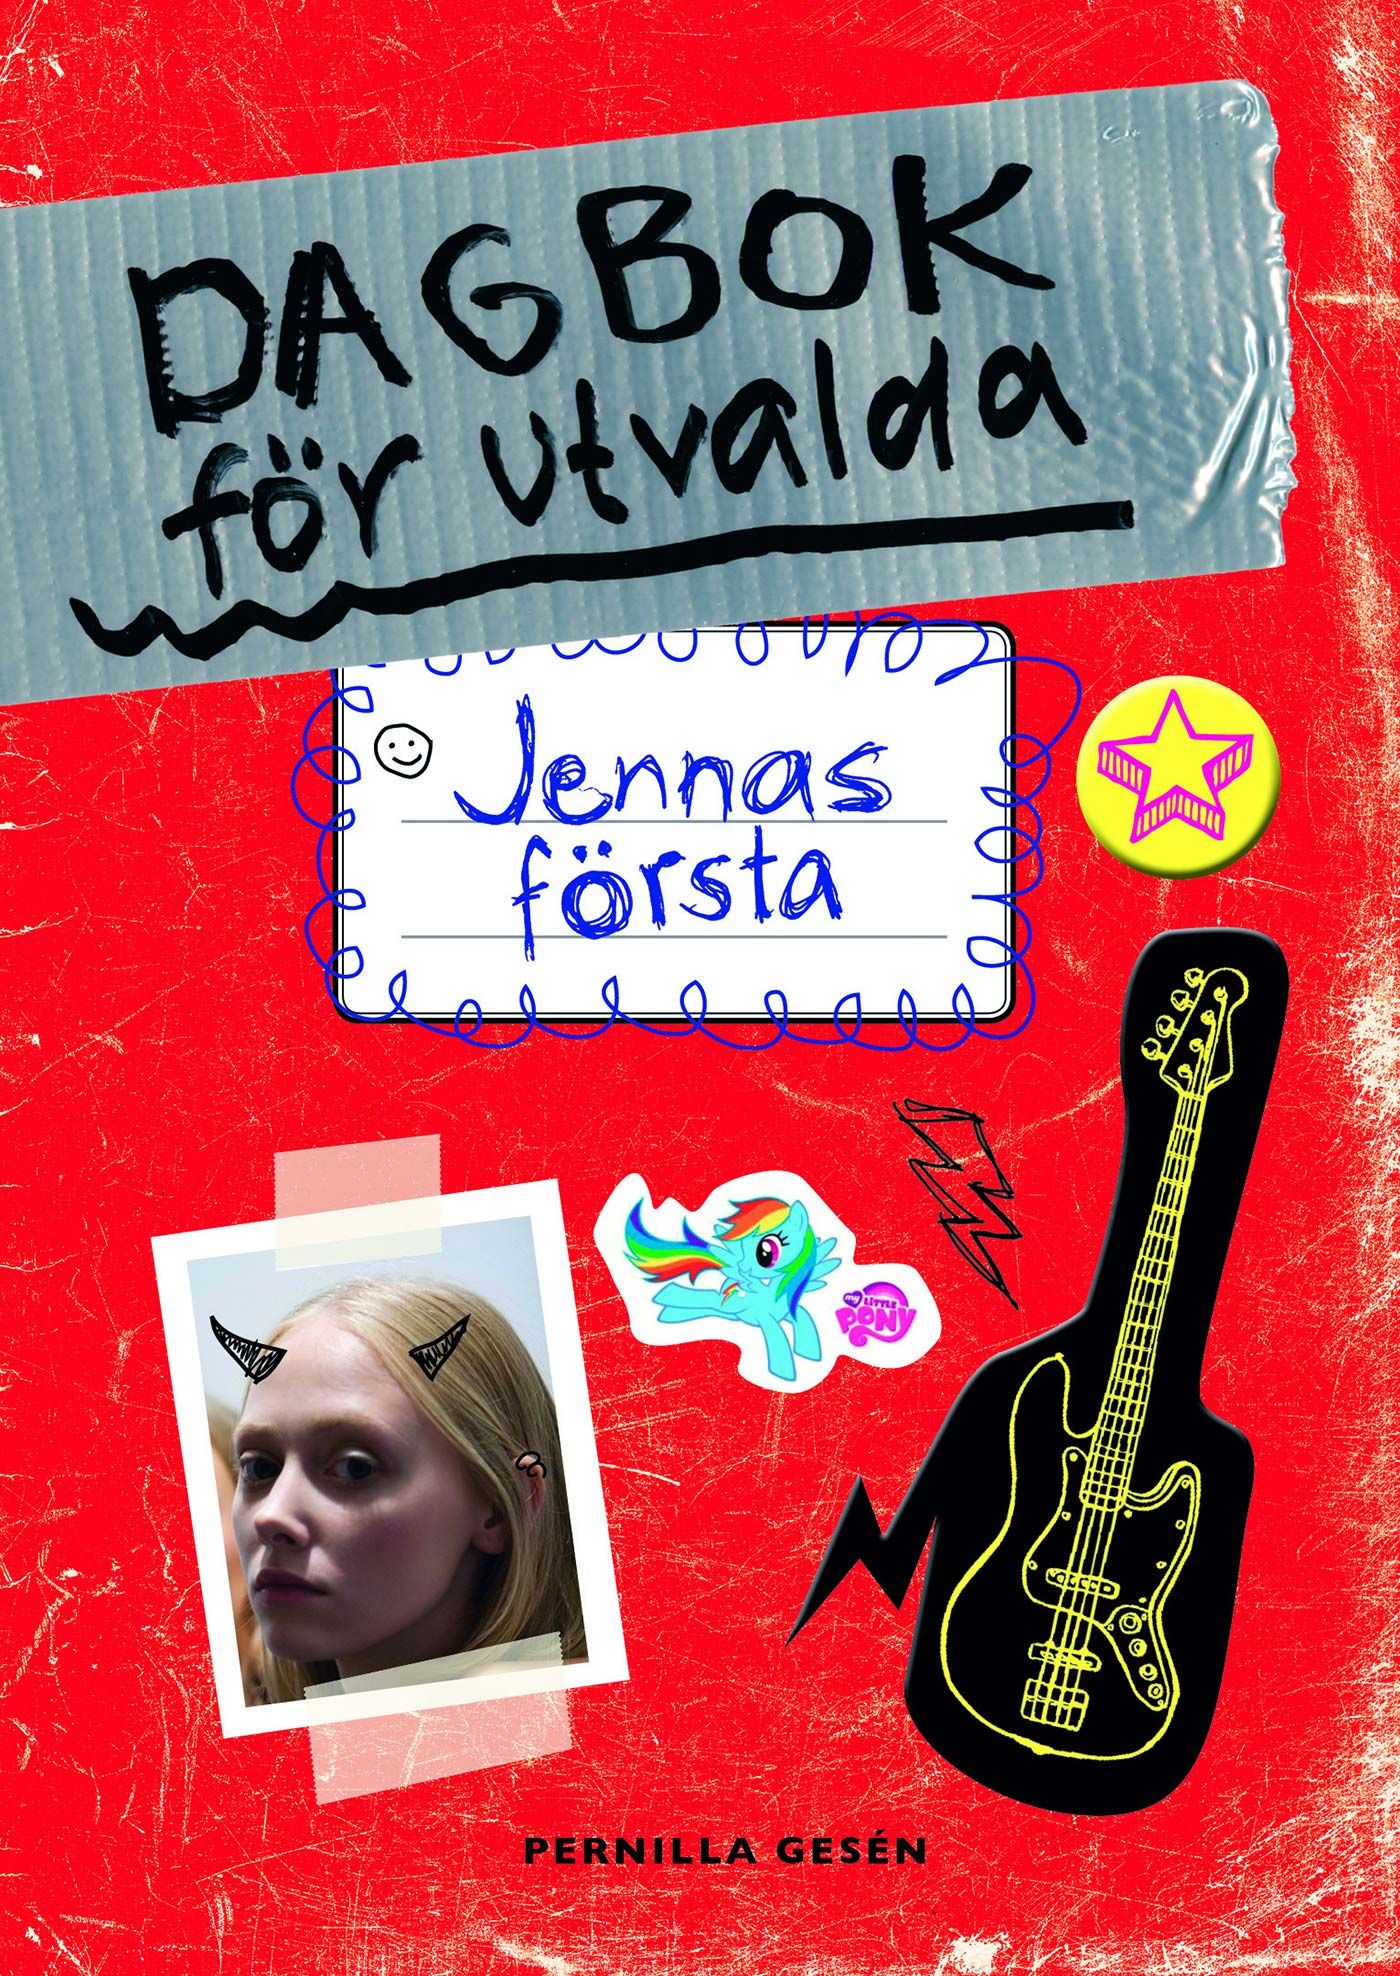 Dagbok för utvalda 1 - Jennas första, eBook by Pernilla Gesén